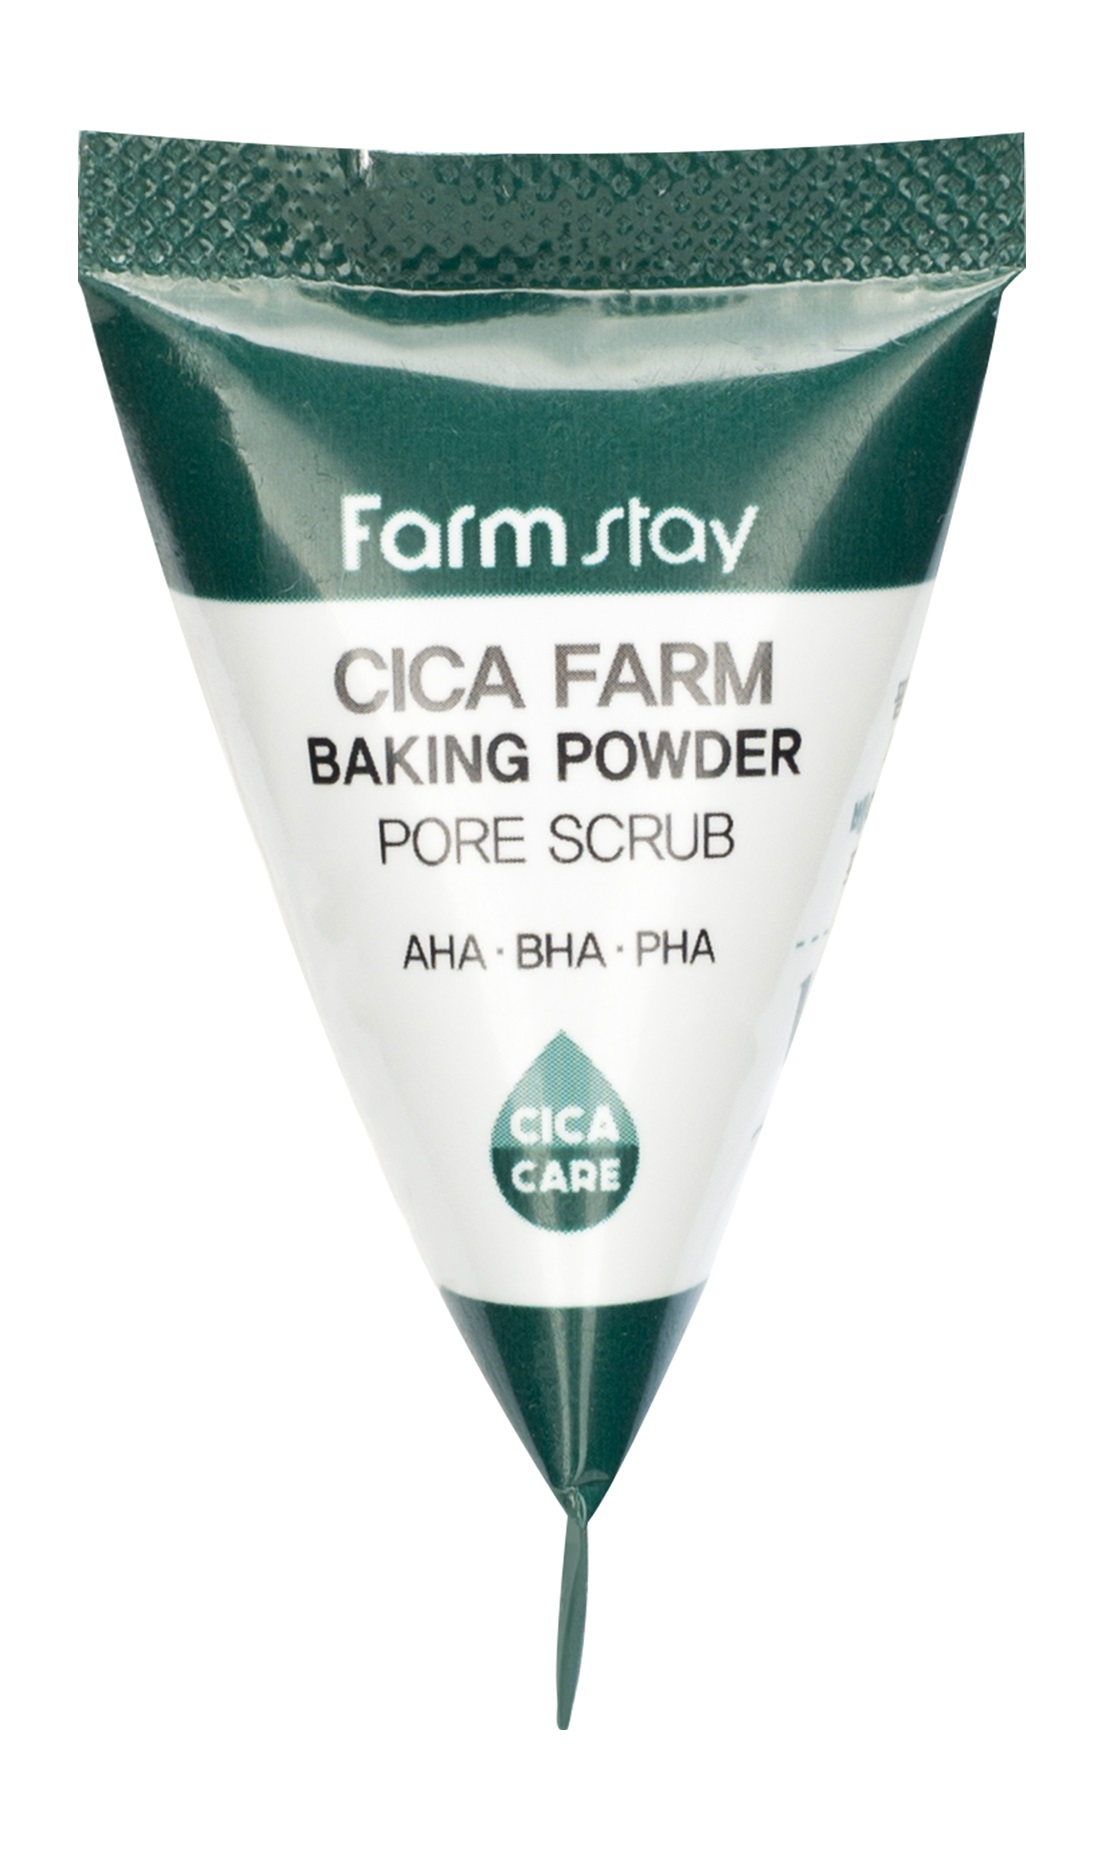 FarmStay Cica Farm Baking Powder Pore Scrub